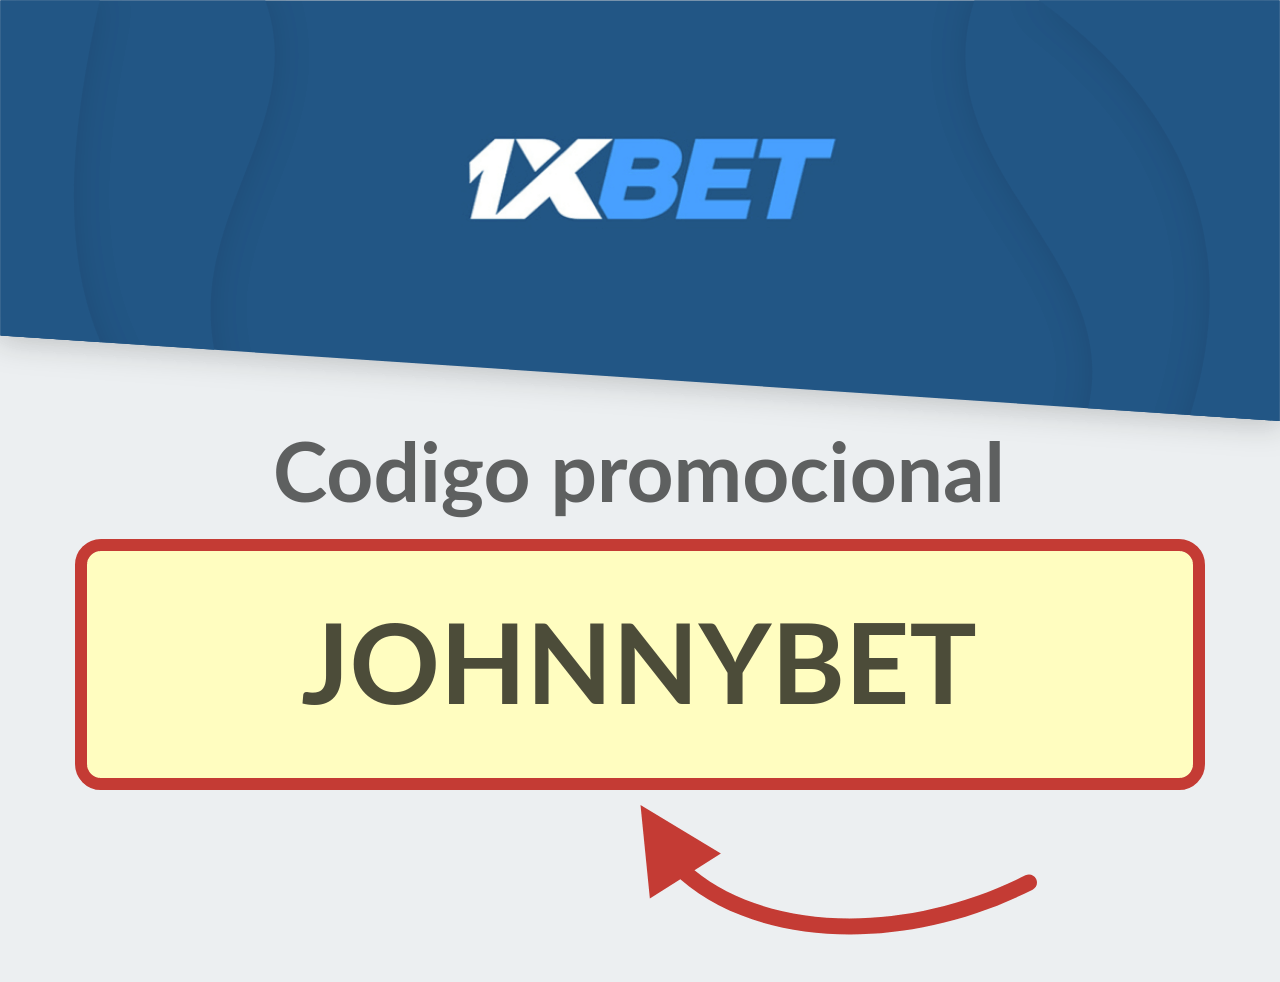 Código Promocional 1XBET Perú: JOHNNYBET